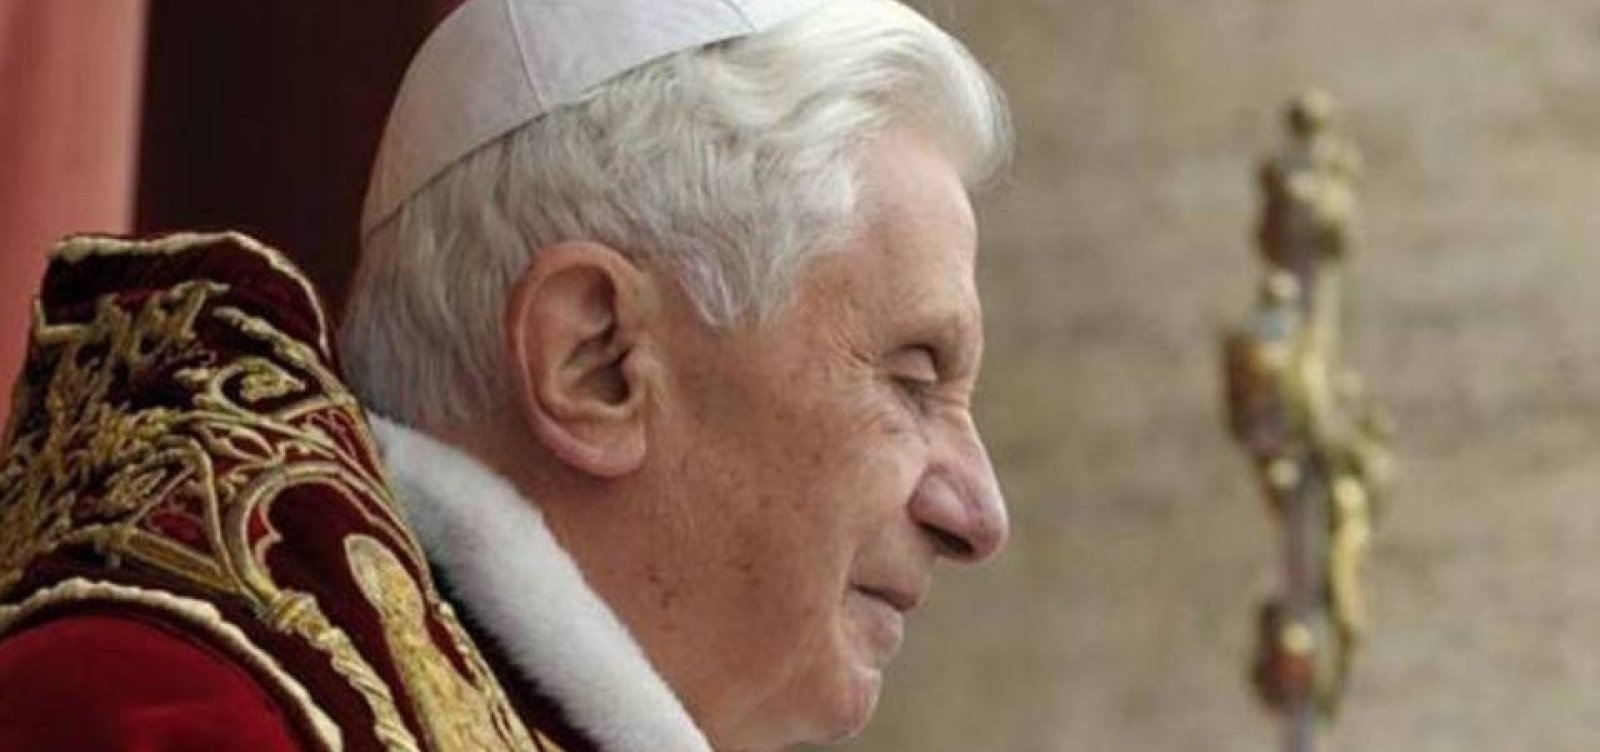 [Saúde do papa emérito Bento XVI está ‘extremamente frágil’, diz artigo alemão]